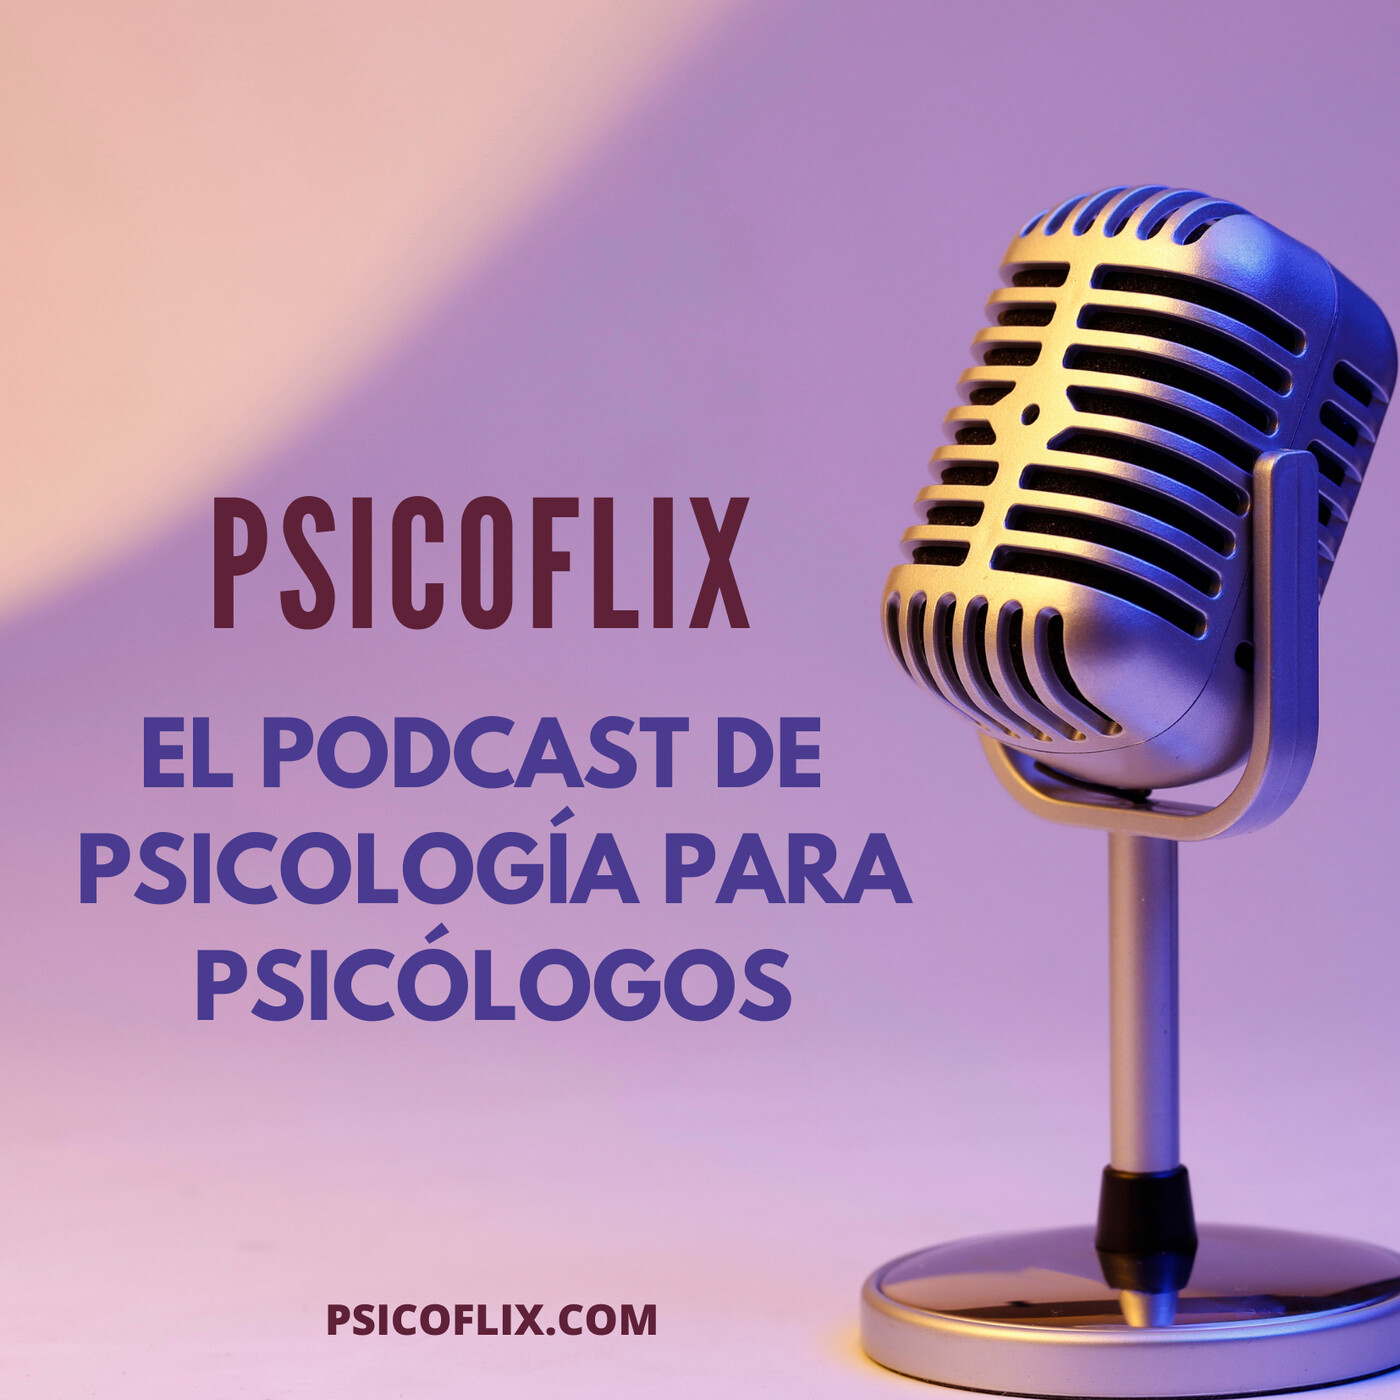 Psicoflix, un podcast de psicología para psicólogos/as y cursos online de psicología basada en la evidencia